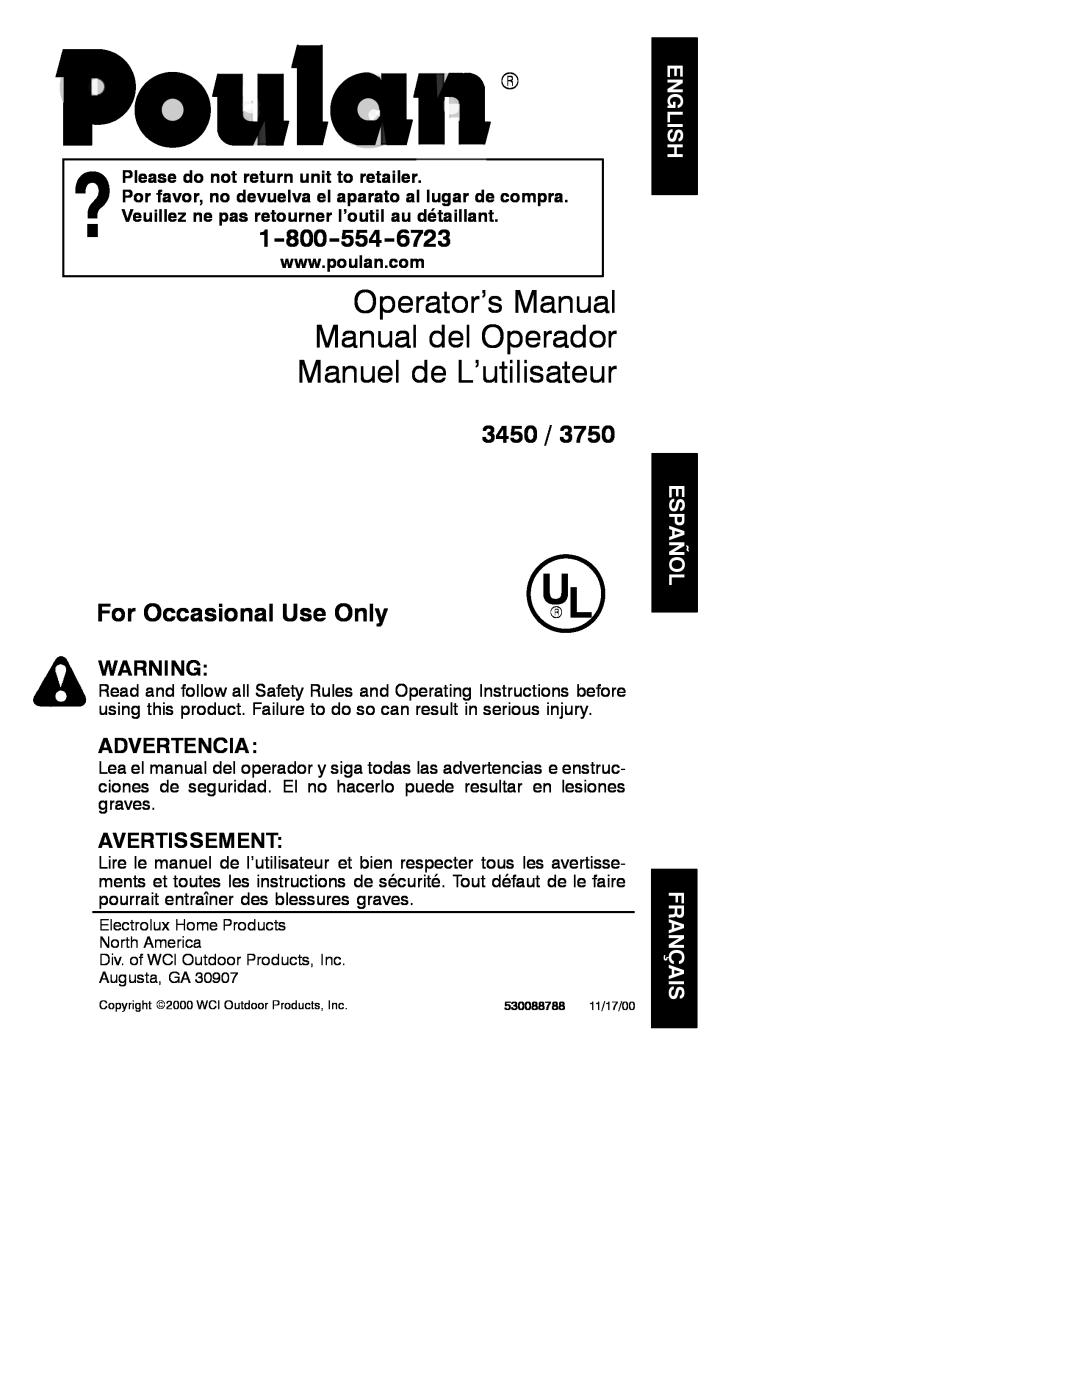 Poulan 530088788 operating instructions Operator’s Manual Manual del Operador Manuel de L’utilisateur, 3450, Advertencia 